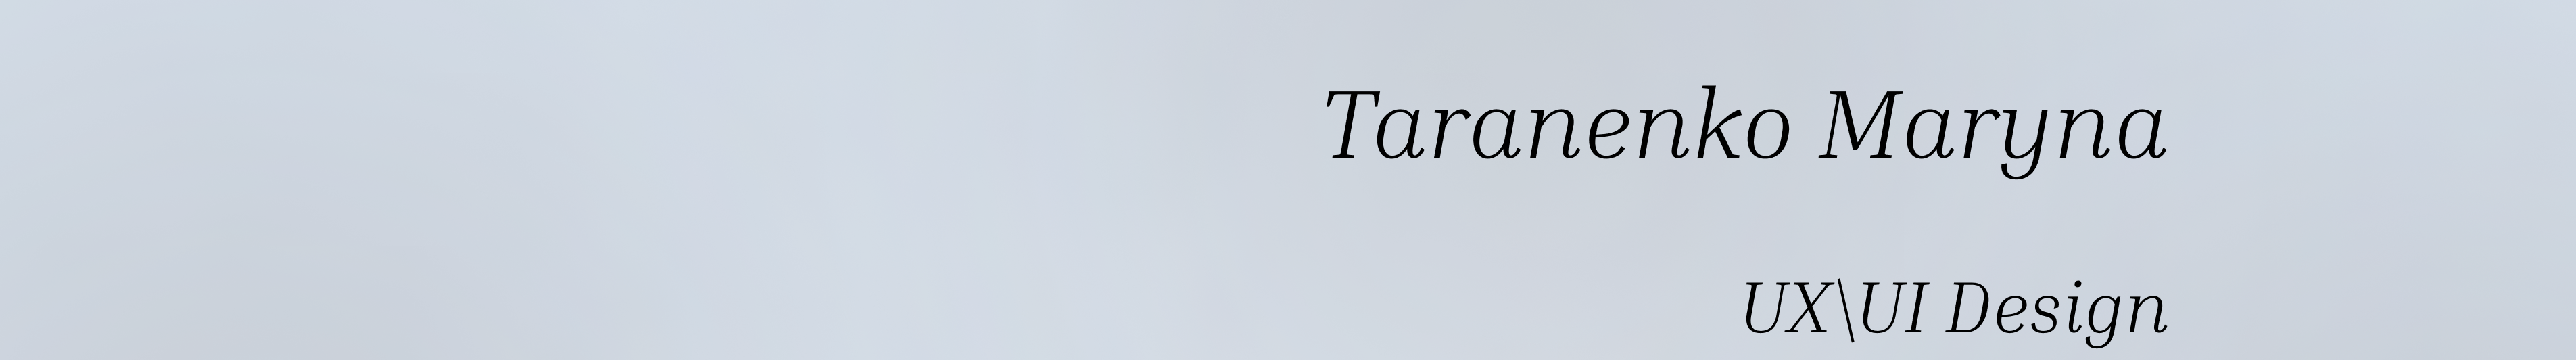 Maryna Taranenko's profile banner